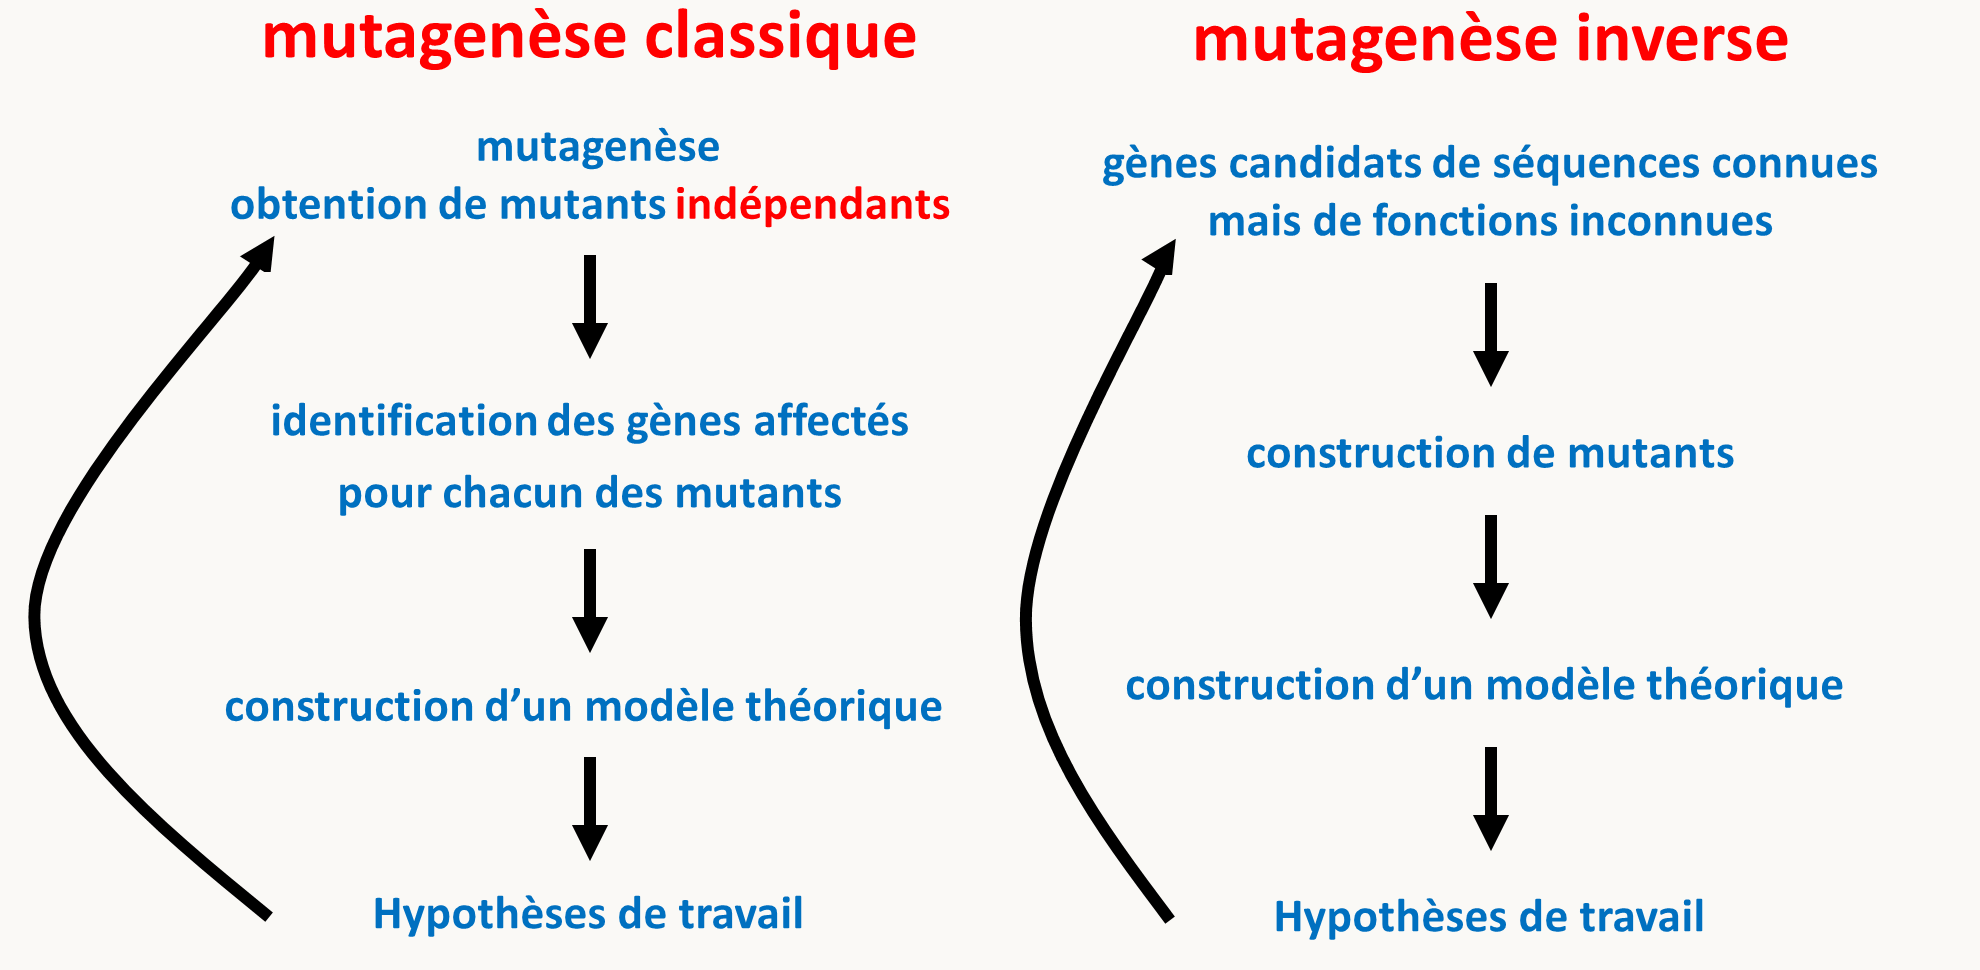 Chapitre 3 : La mutagenèse · GitBook